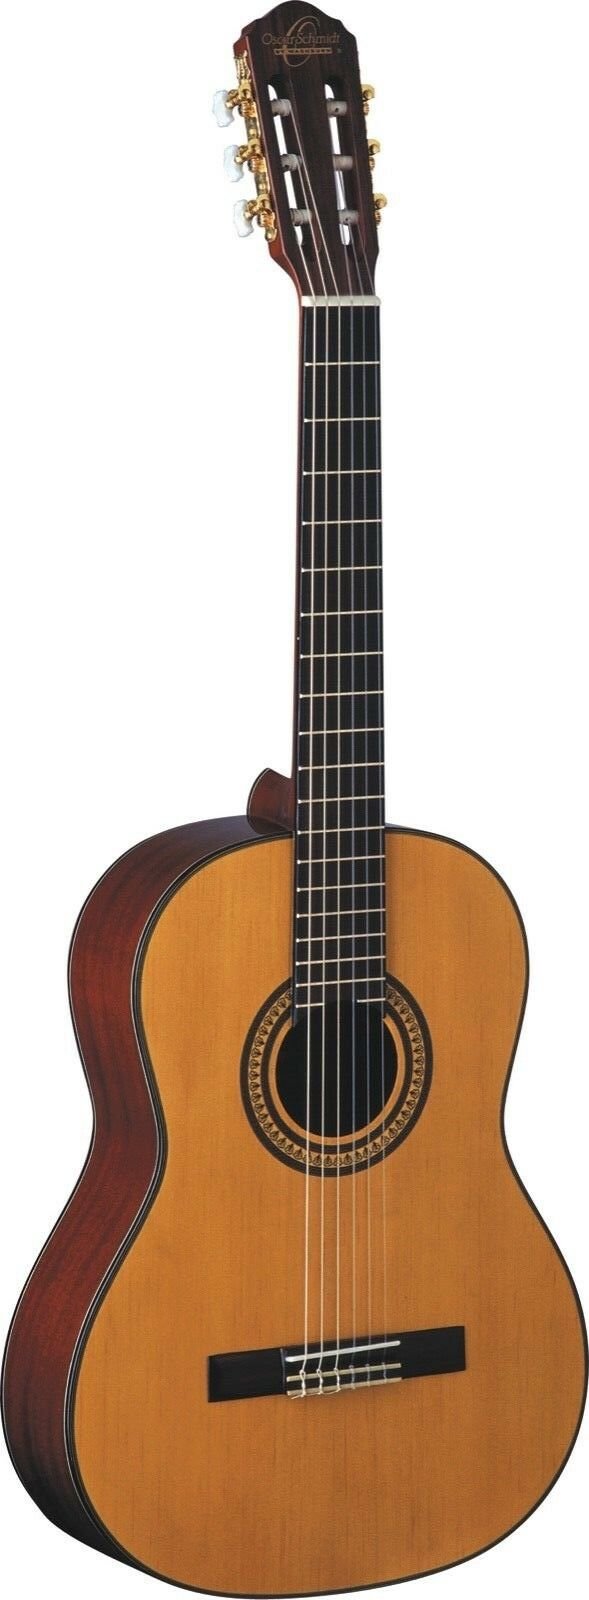 Oscar Schmidt OC11 Classical Acoustic Guitar - Natural - OC11